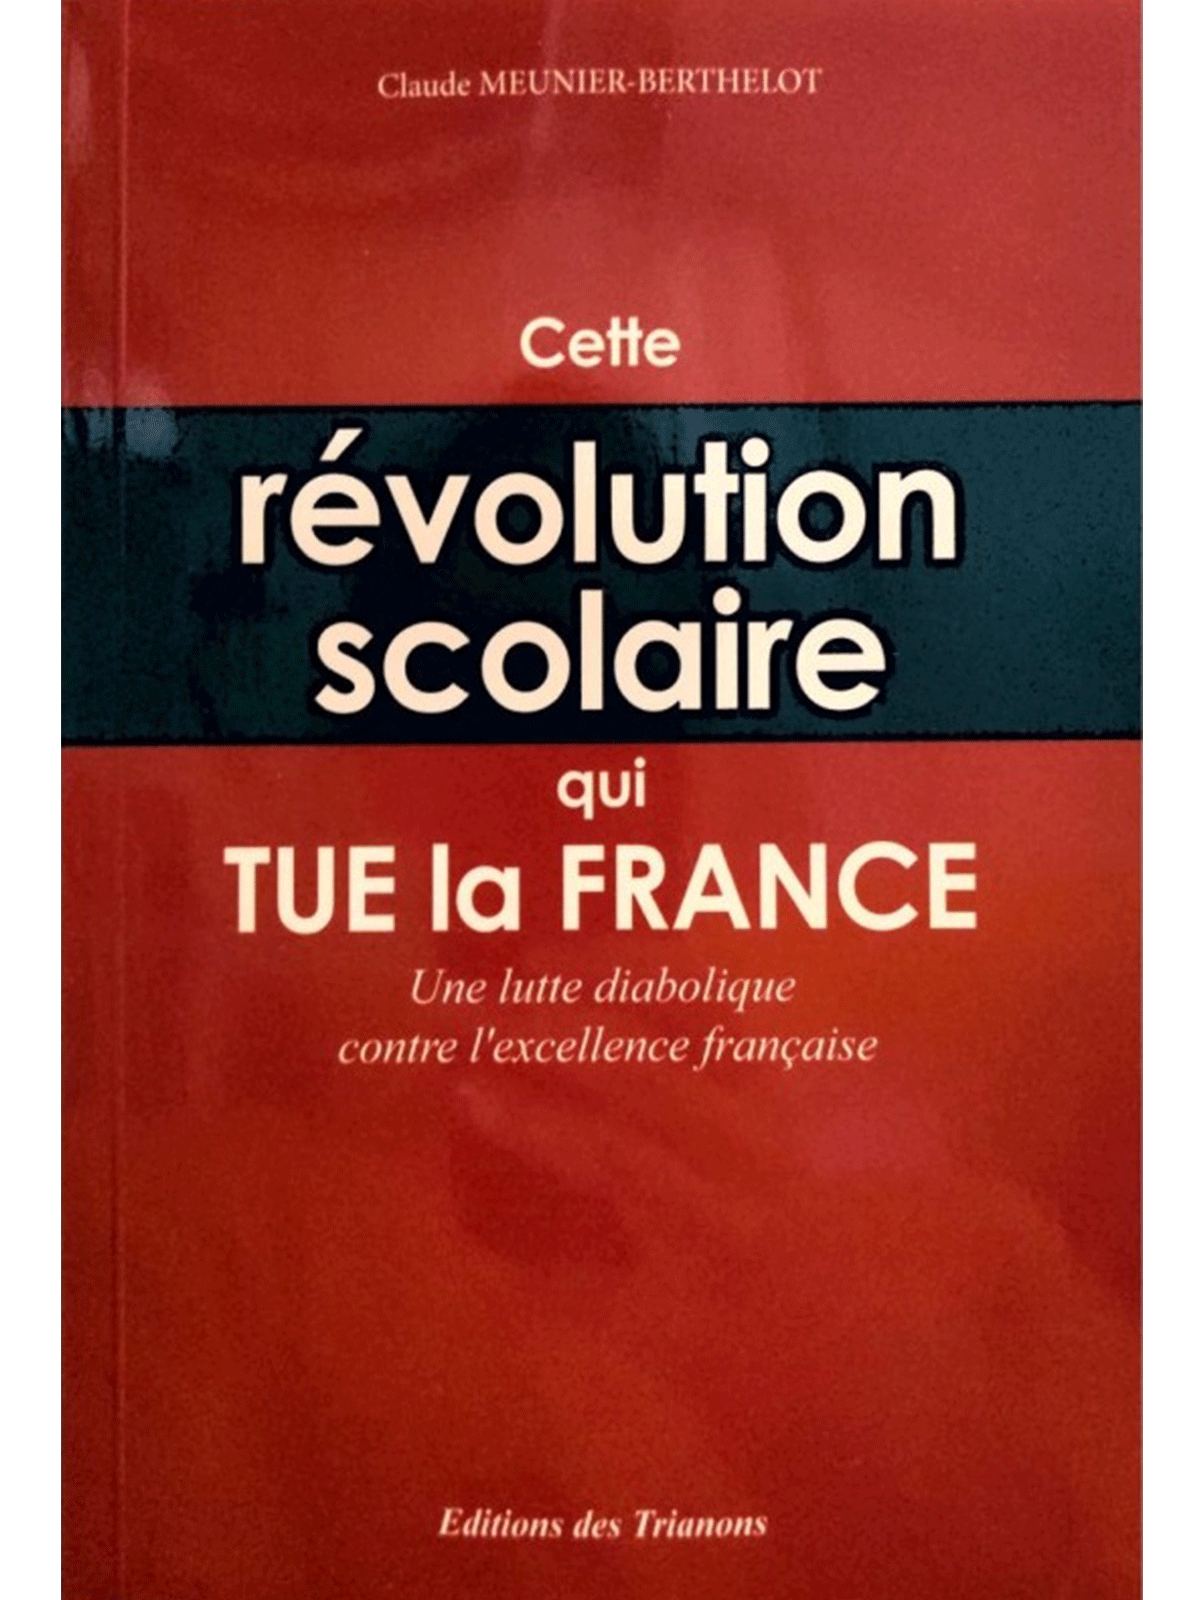 Claude Meunier-Berthelot : Cette révolution scolaire qui TUE la France